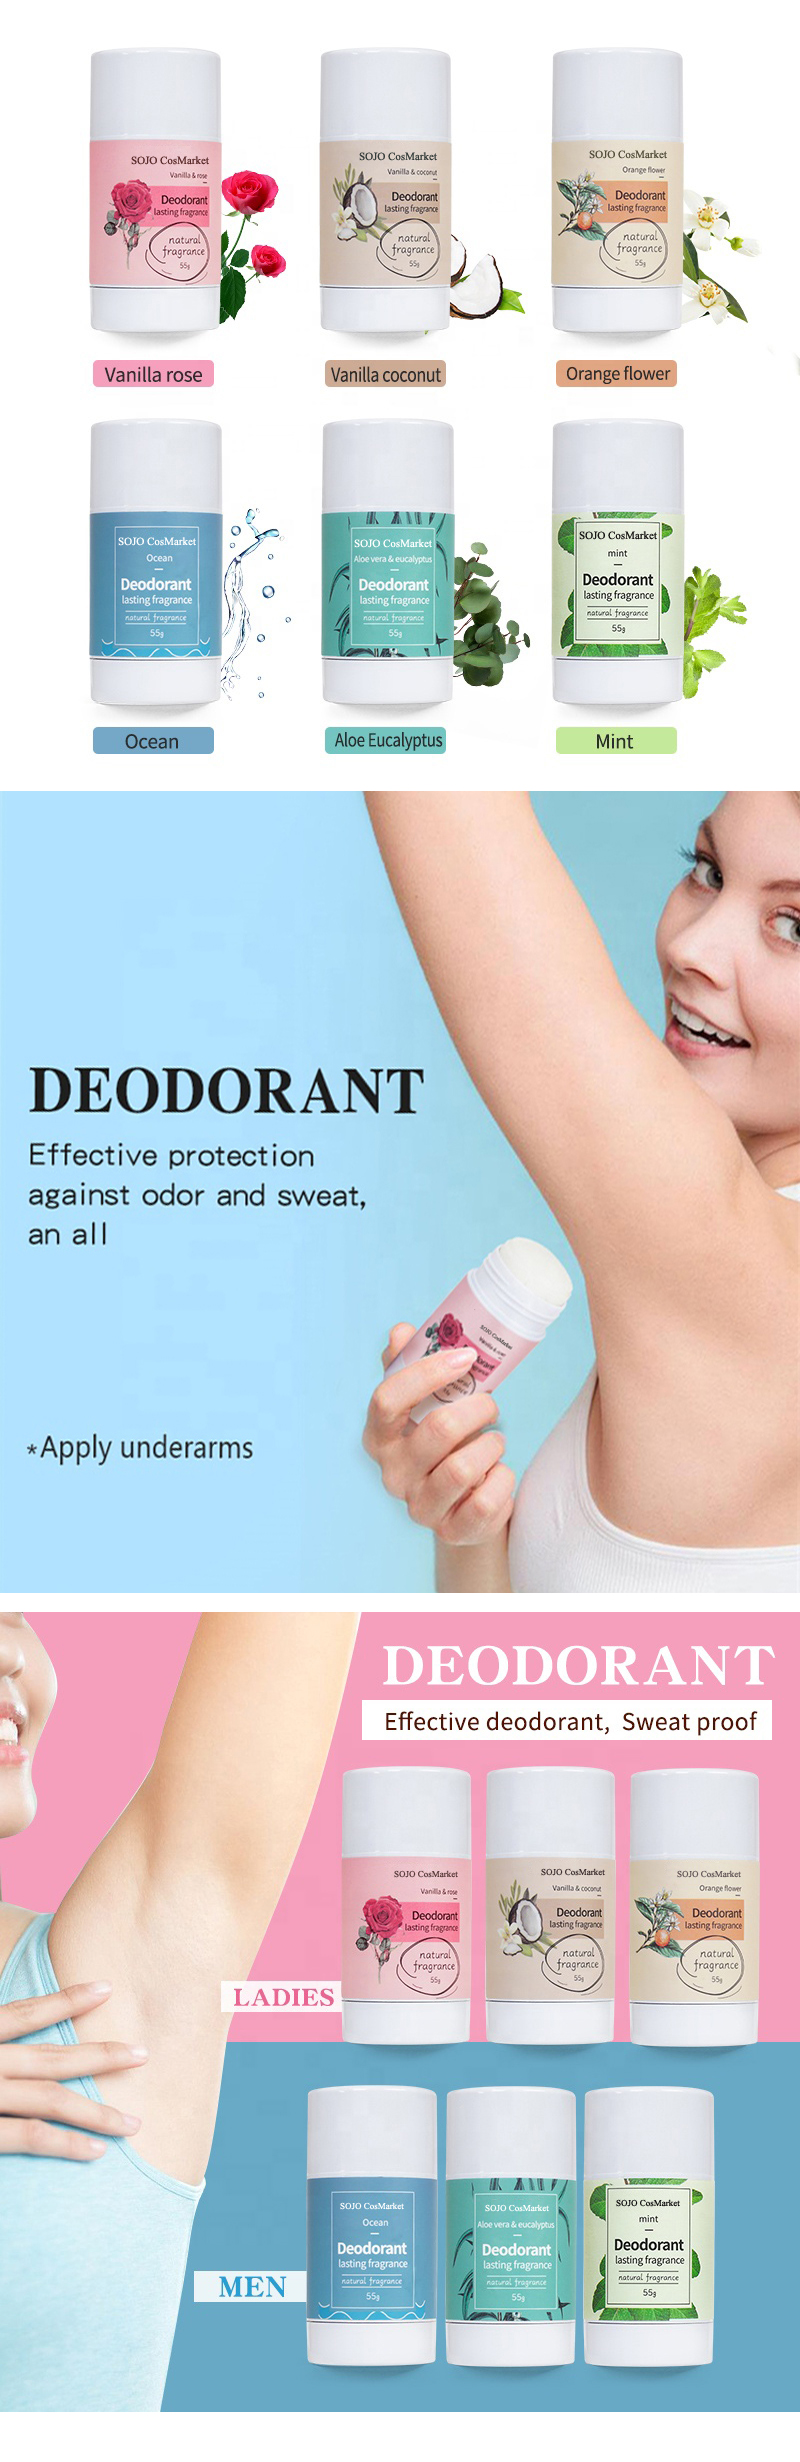 Deodorant Jpg